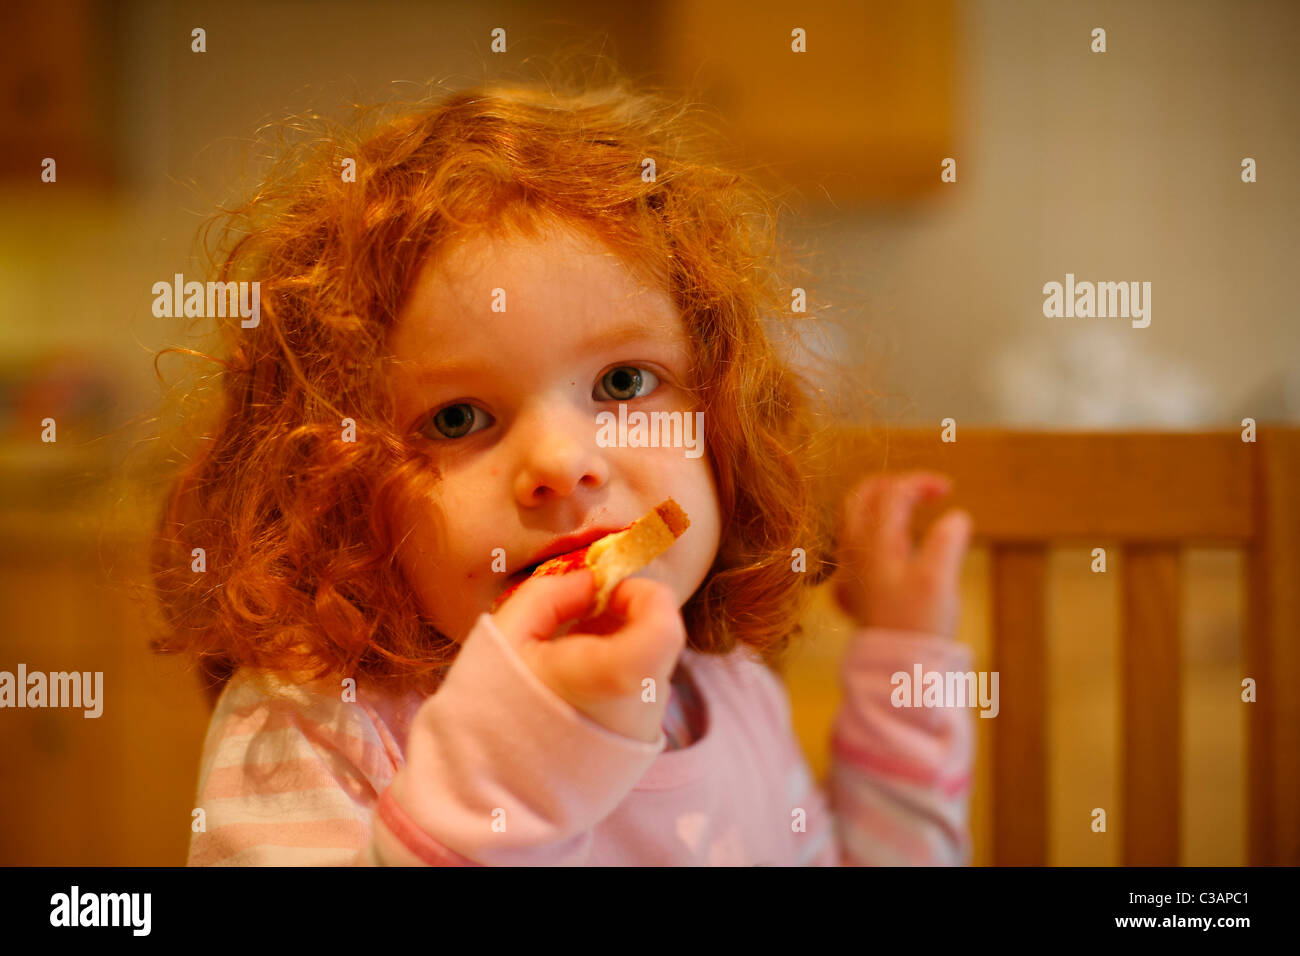 Une fillette de 4 ans avec des cheveux gingembre manger du pain grillé pour le petit-déjeuner dans une cuisine. Banque D'Images